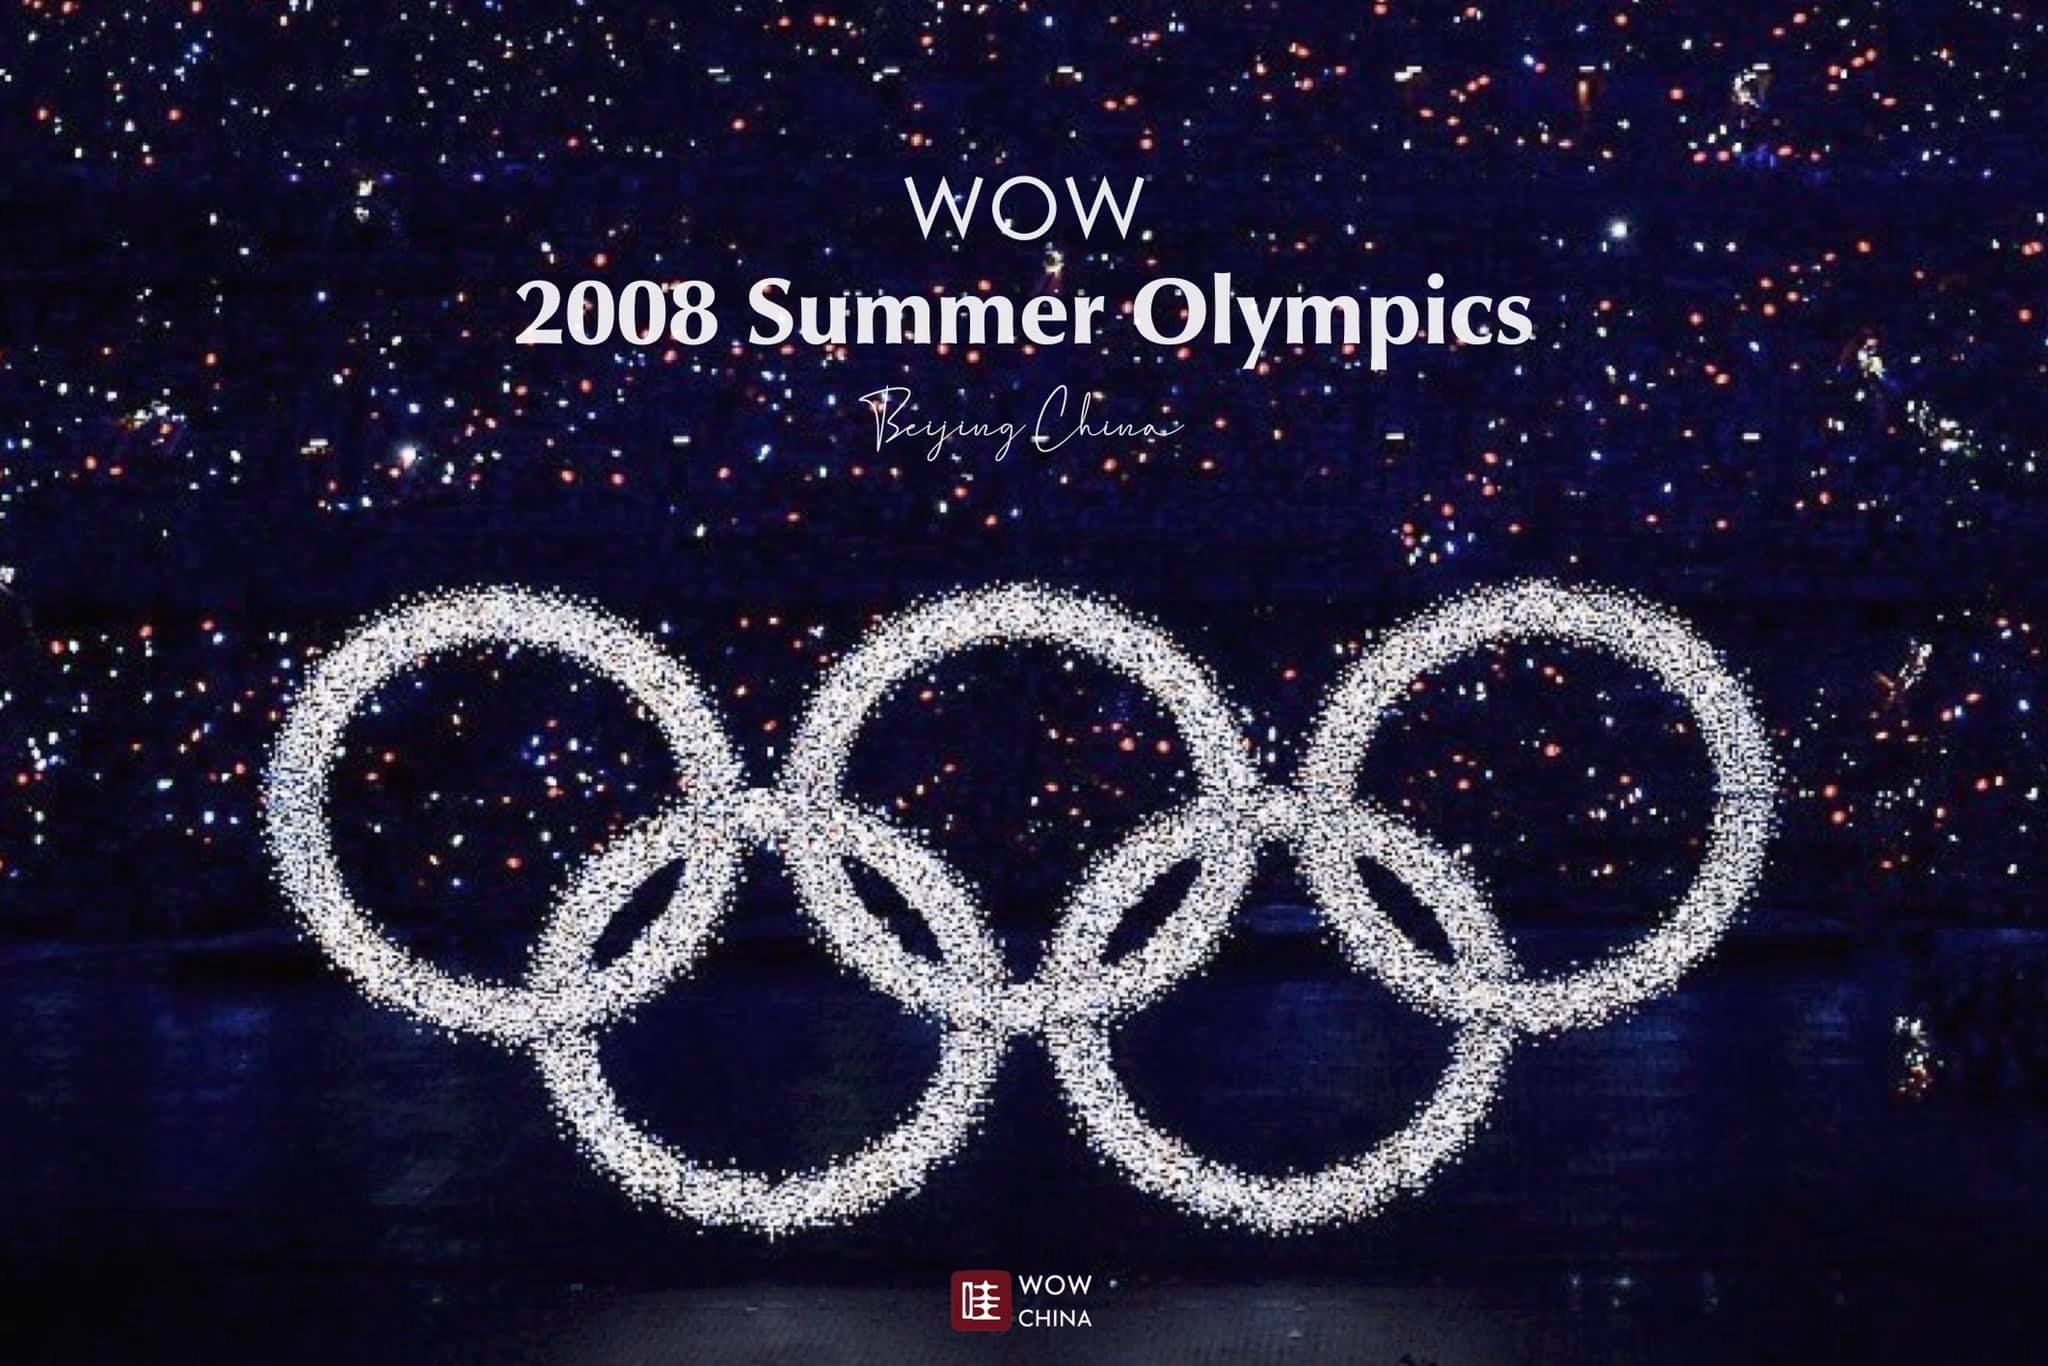 ผ่านมากว่า 12 ปี กับเส้นทางสู่มหาอำนาจของจีน
เบื้องลึกอภิมหามหกรรมกีฬาโอลิมปิก 2…